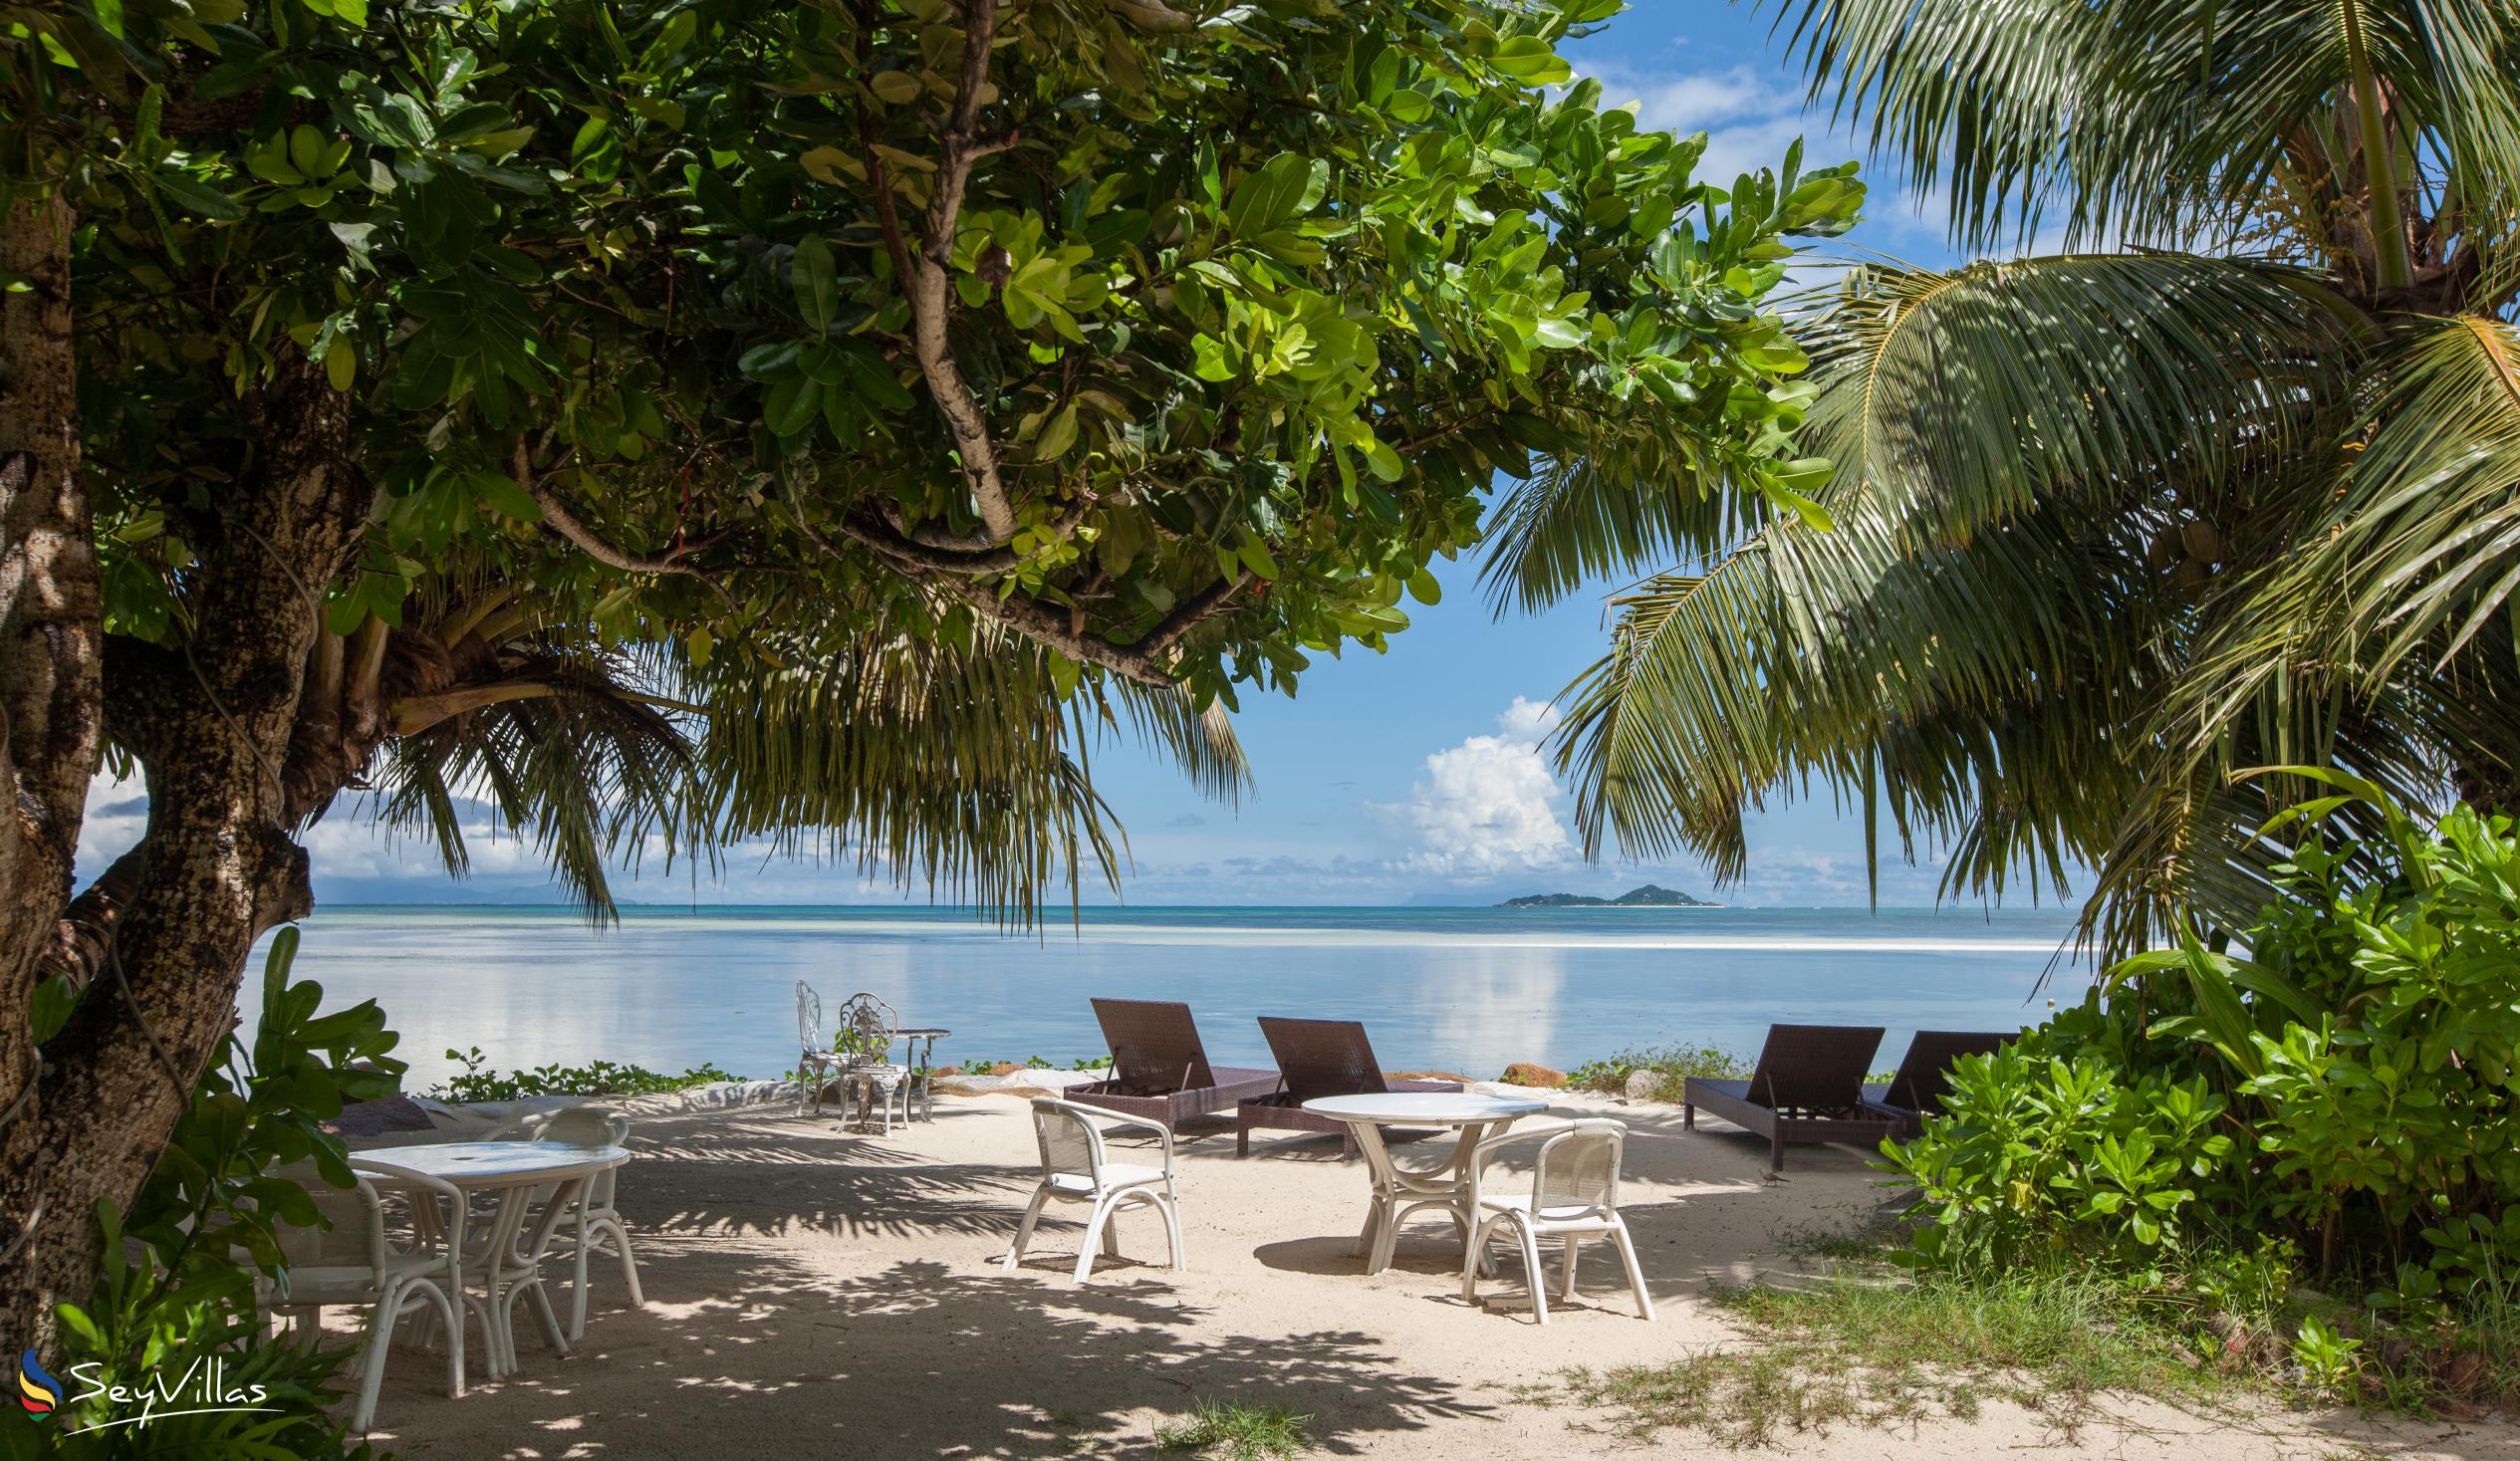 Foto 5: Palm Beach Hotel - Aussenbereich - Praslin (Seychellen)